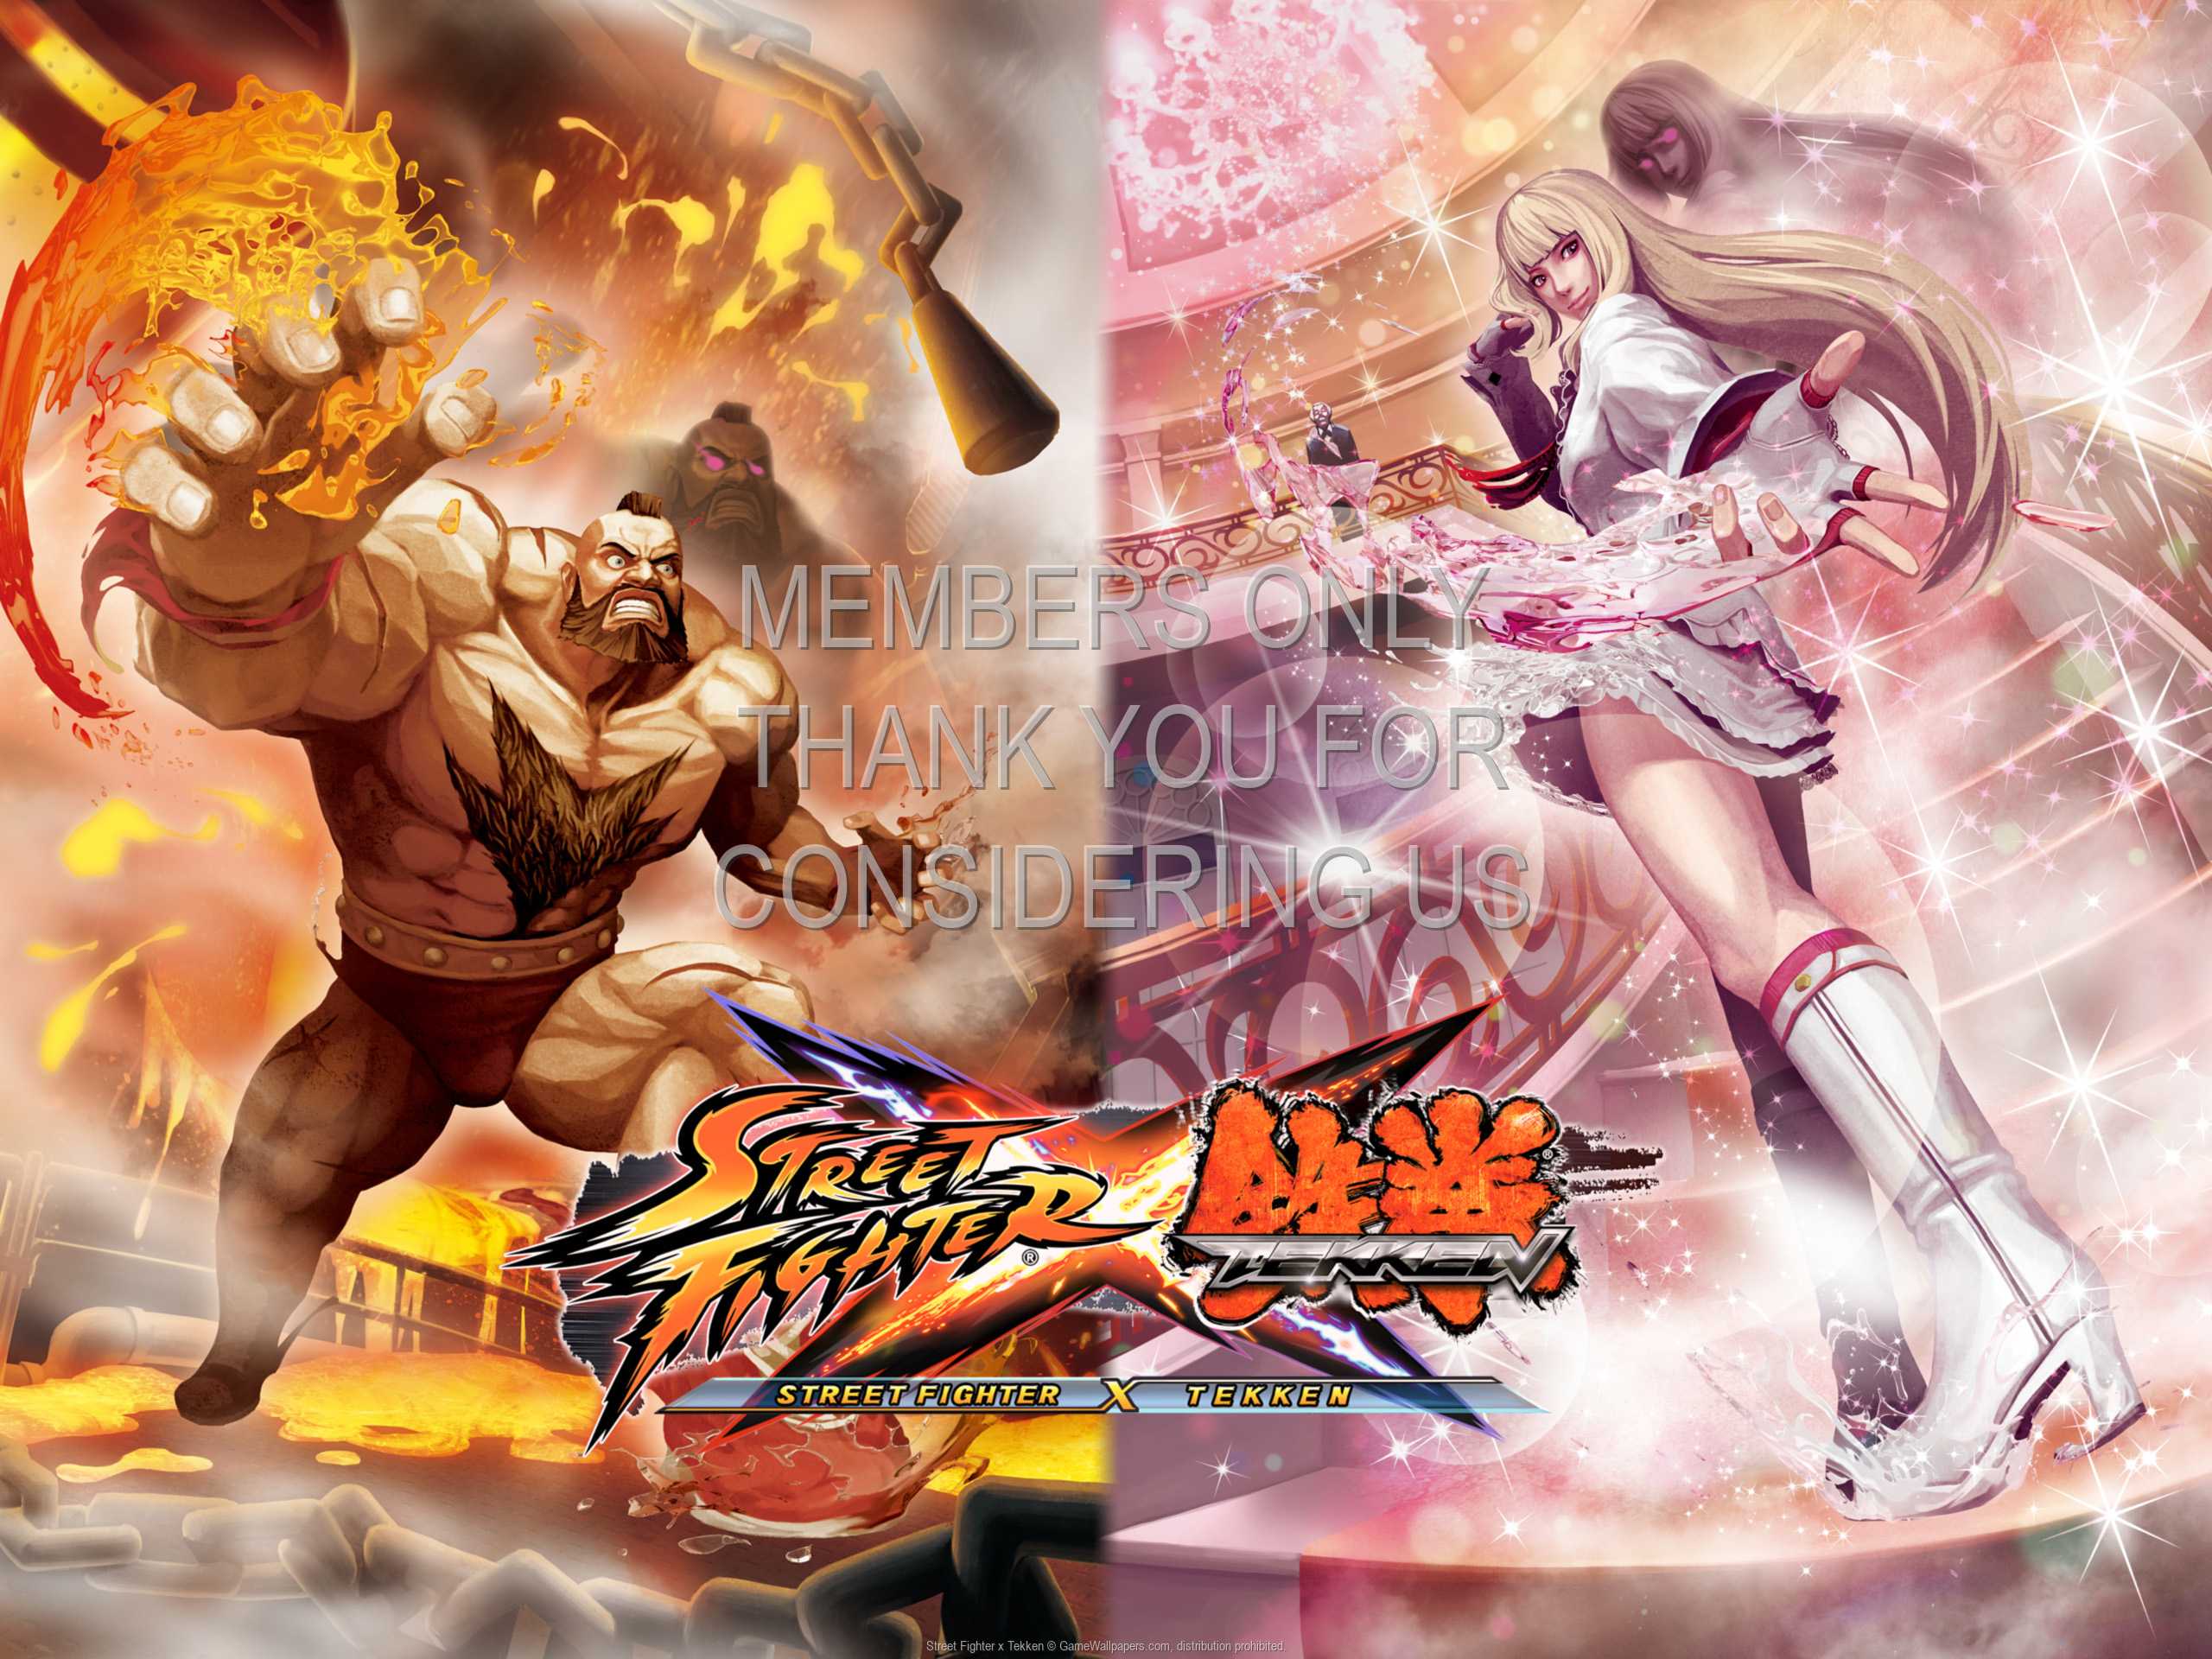 Street Fighter x Tekken 1080p Horizontal Mobile wallpaper or background 02